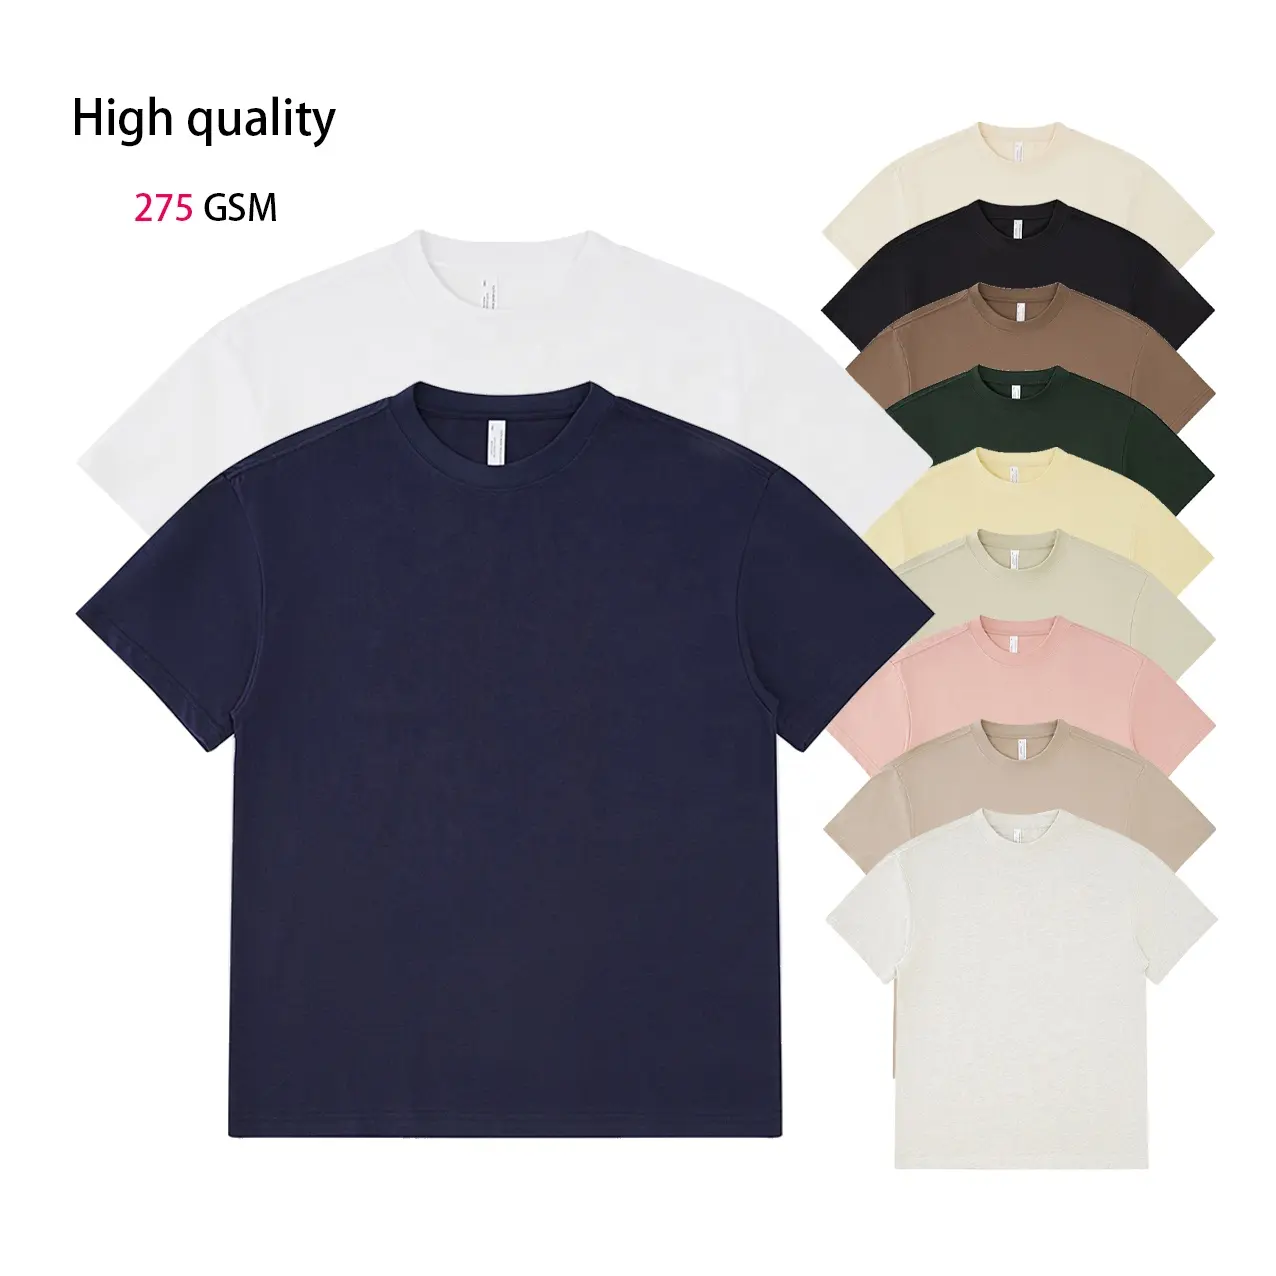 Camicia con logo personalizzato di qualità t-Shirt Casual 100% cotone ampia da uomo t-Shirt 275 in cotone GSM in bianco t-Shirt con il tuo logo